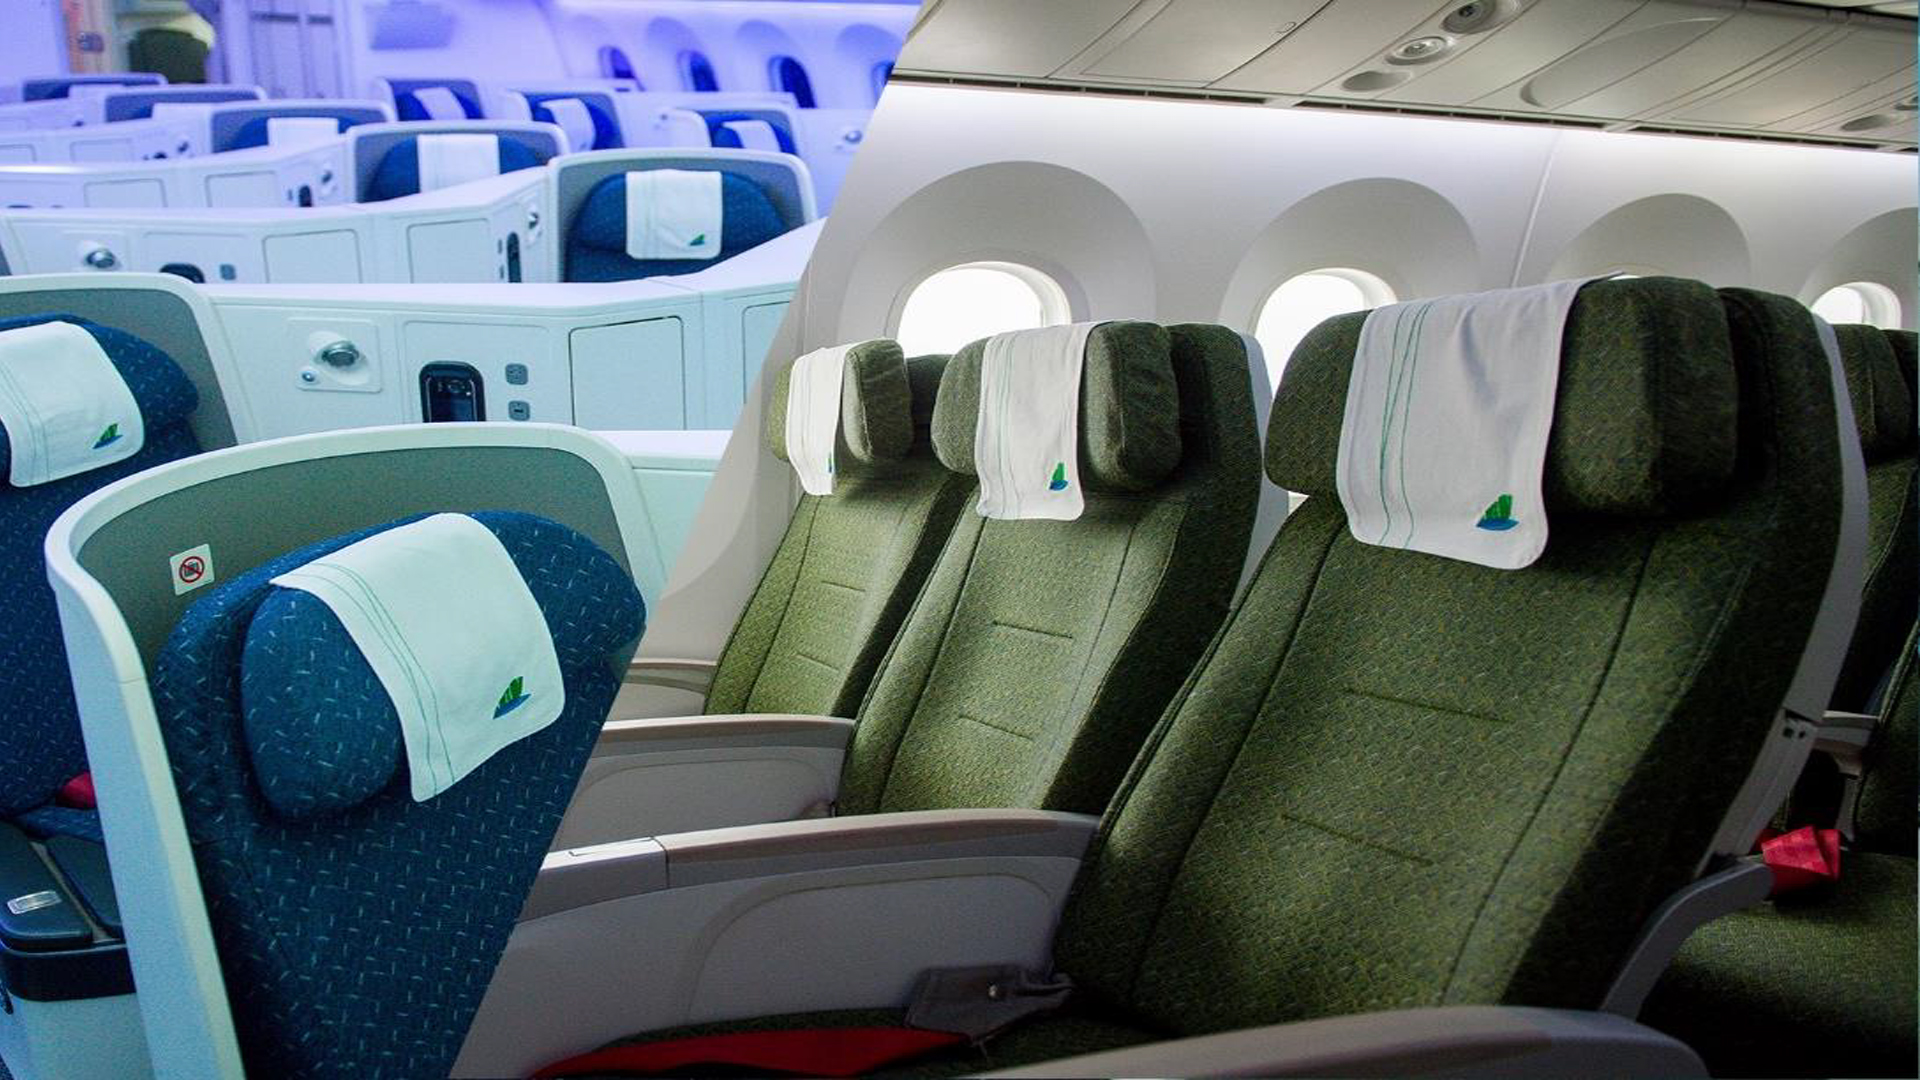 Không chỉ 2 mà có tới 4 hạng ghế máy bay tại các hãng hàng không trên thế  giới